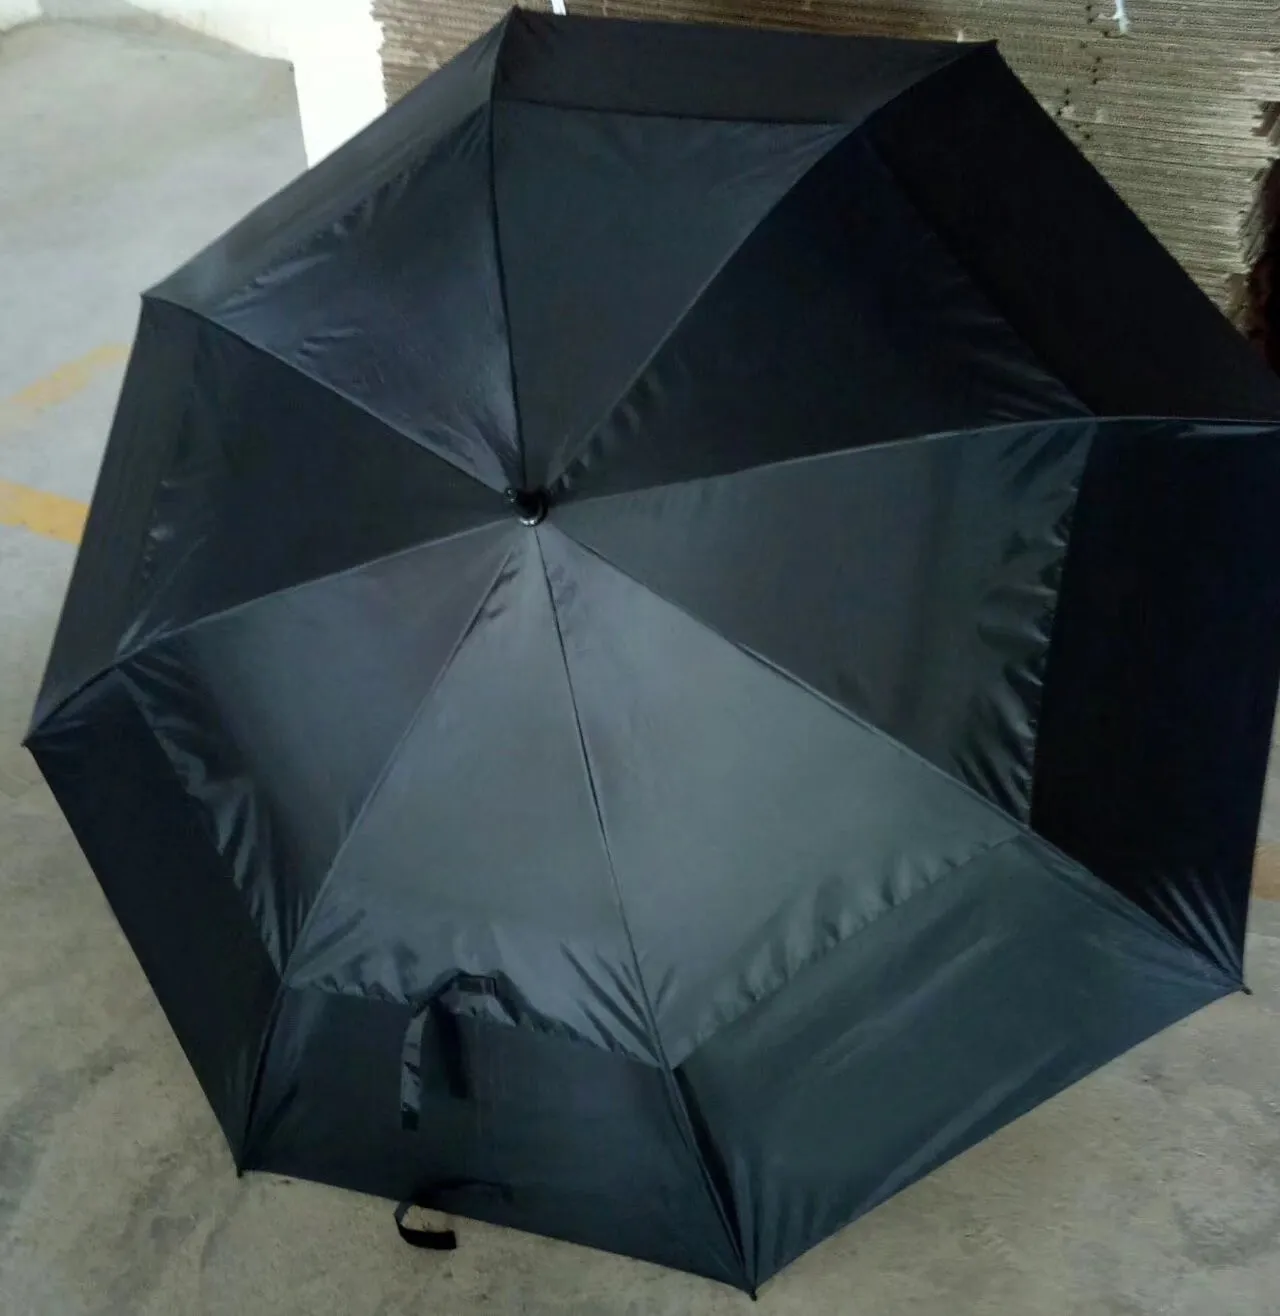 ücretsiz gönderim (100pcs / lot) iki katman karşıtı UVA saf renk toptan şemsiye serbestçe otomatik OEM golf şemsiye marka seçildi kavrarken